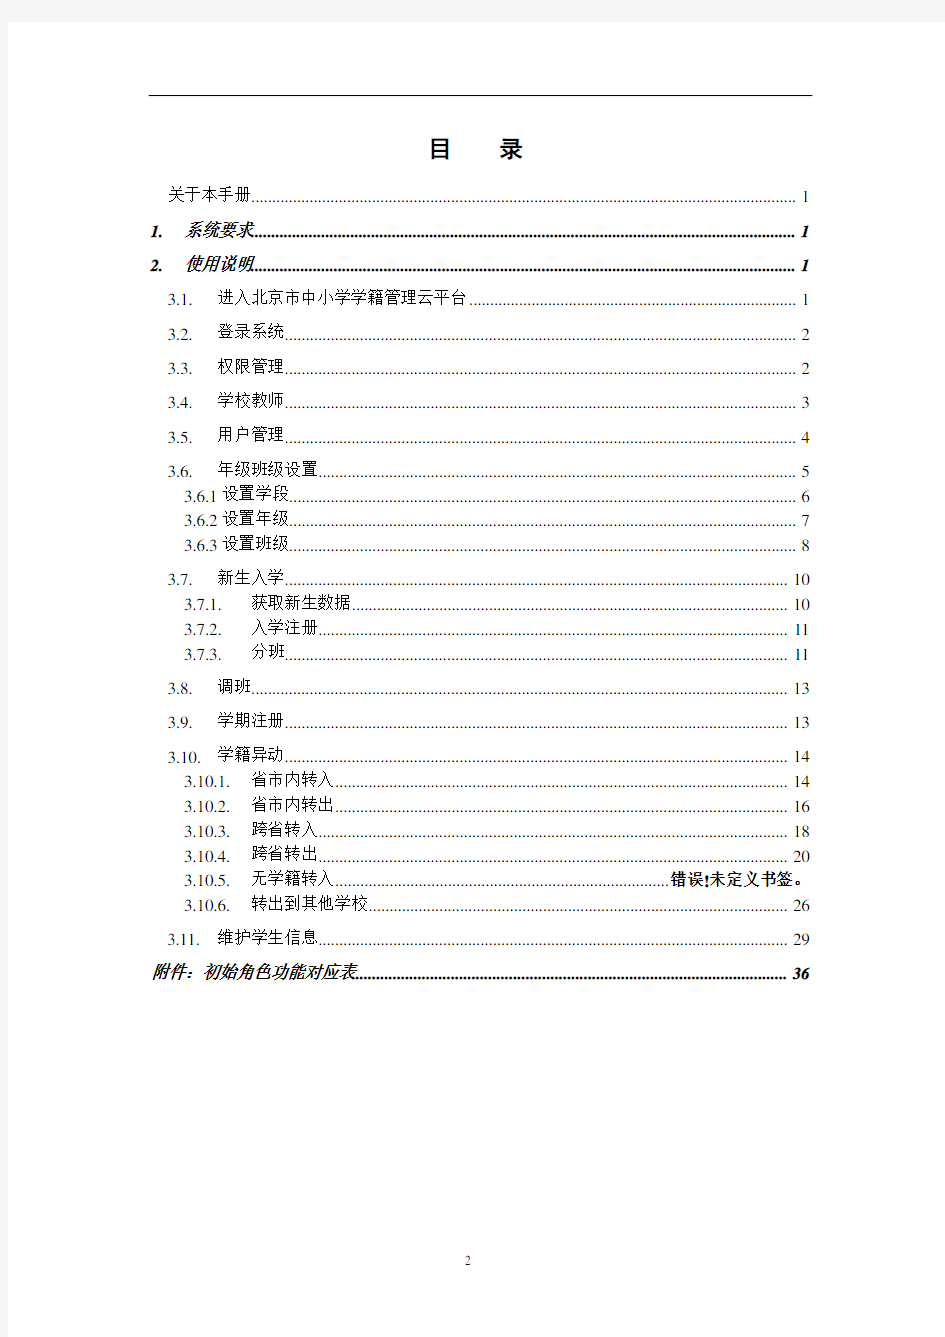 学生学籍云平台用户手册0126